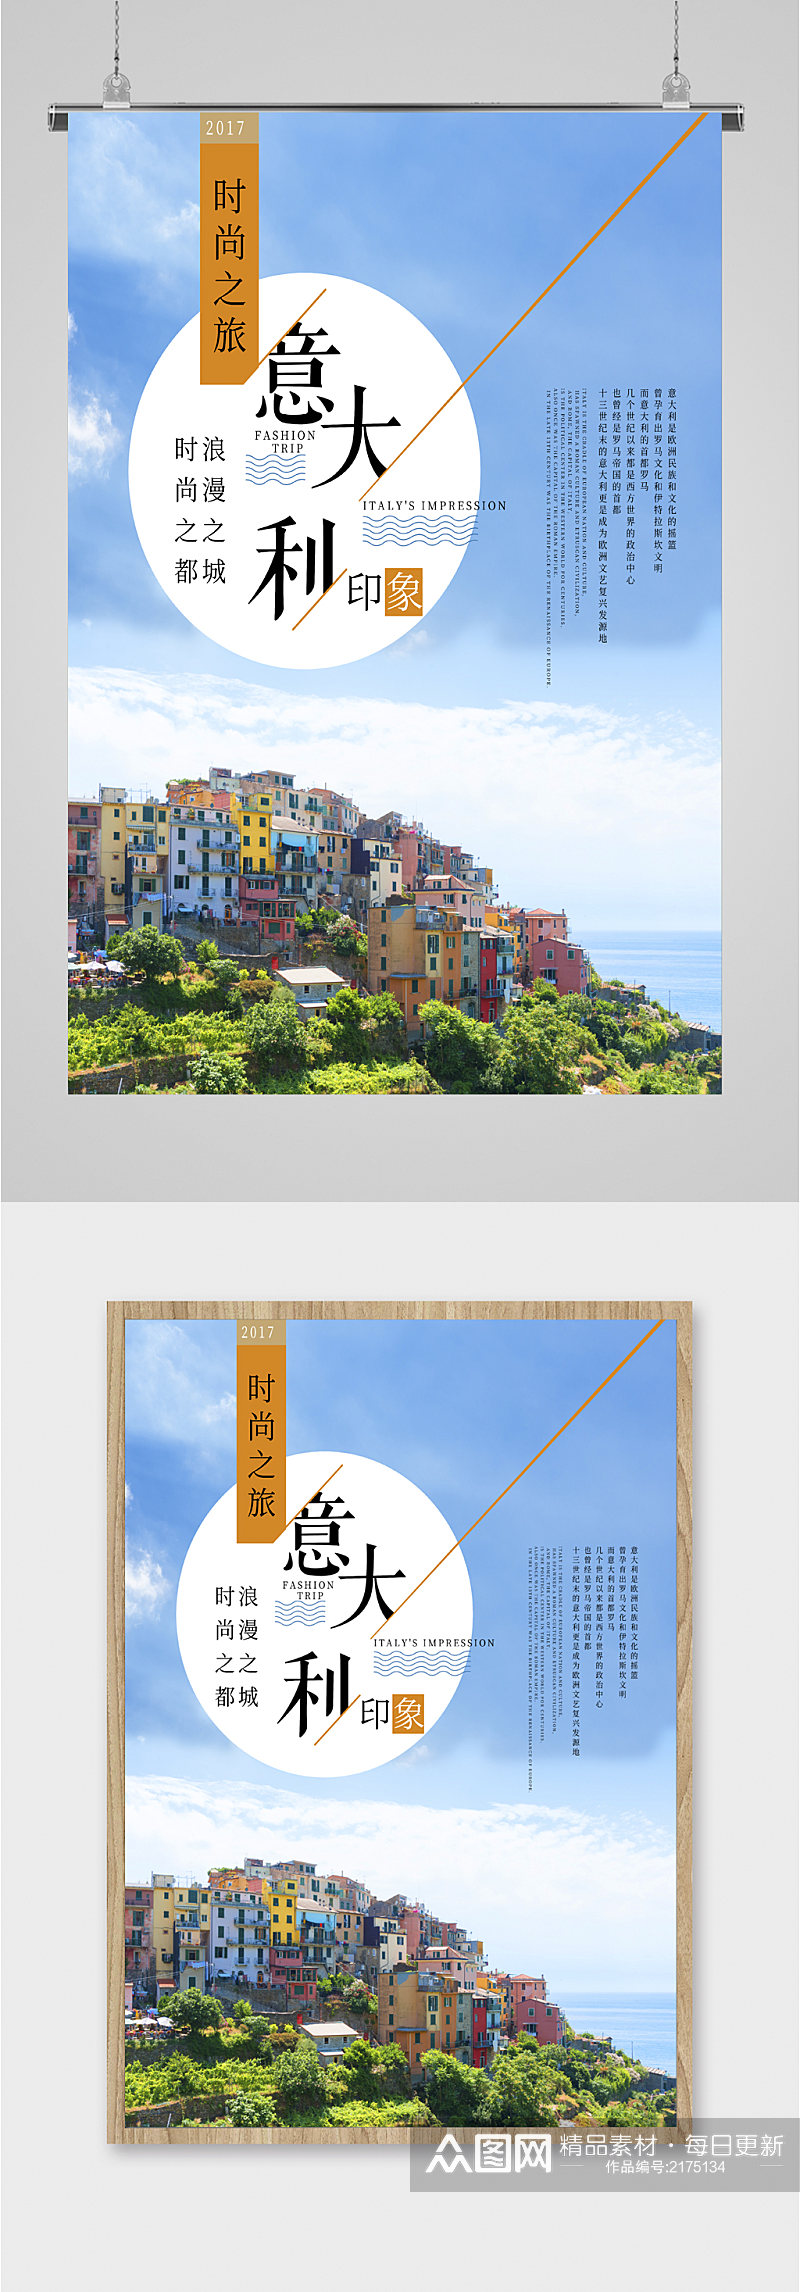 意大利风景旅游海报素材